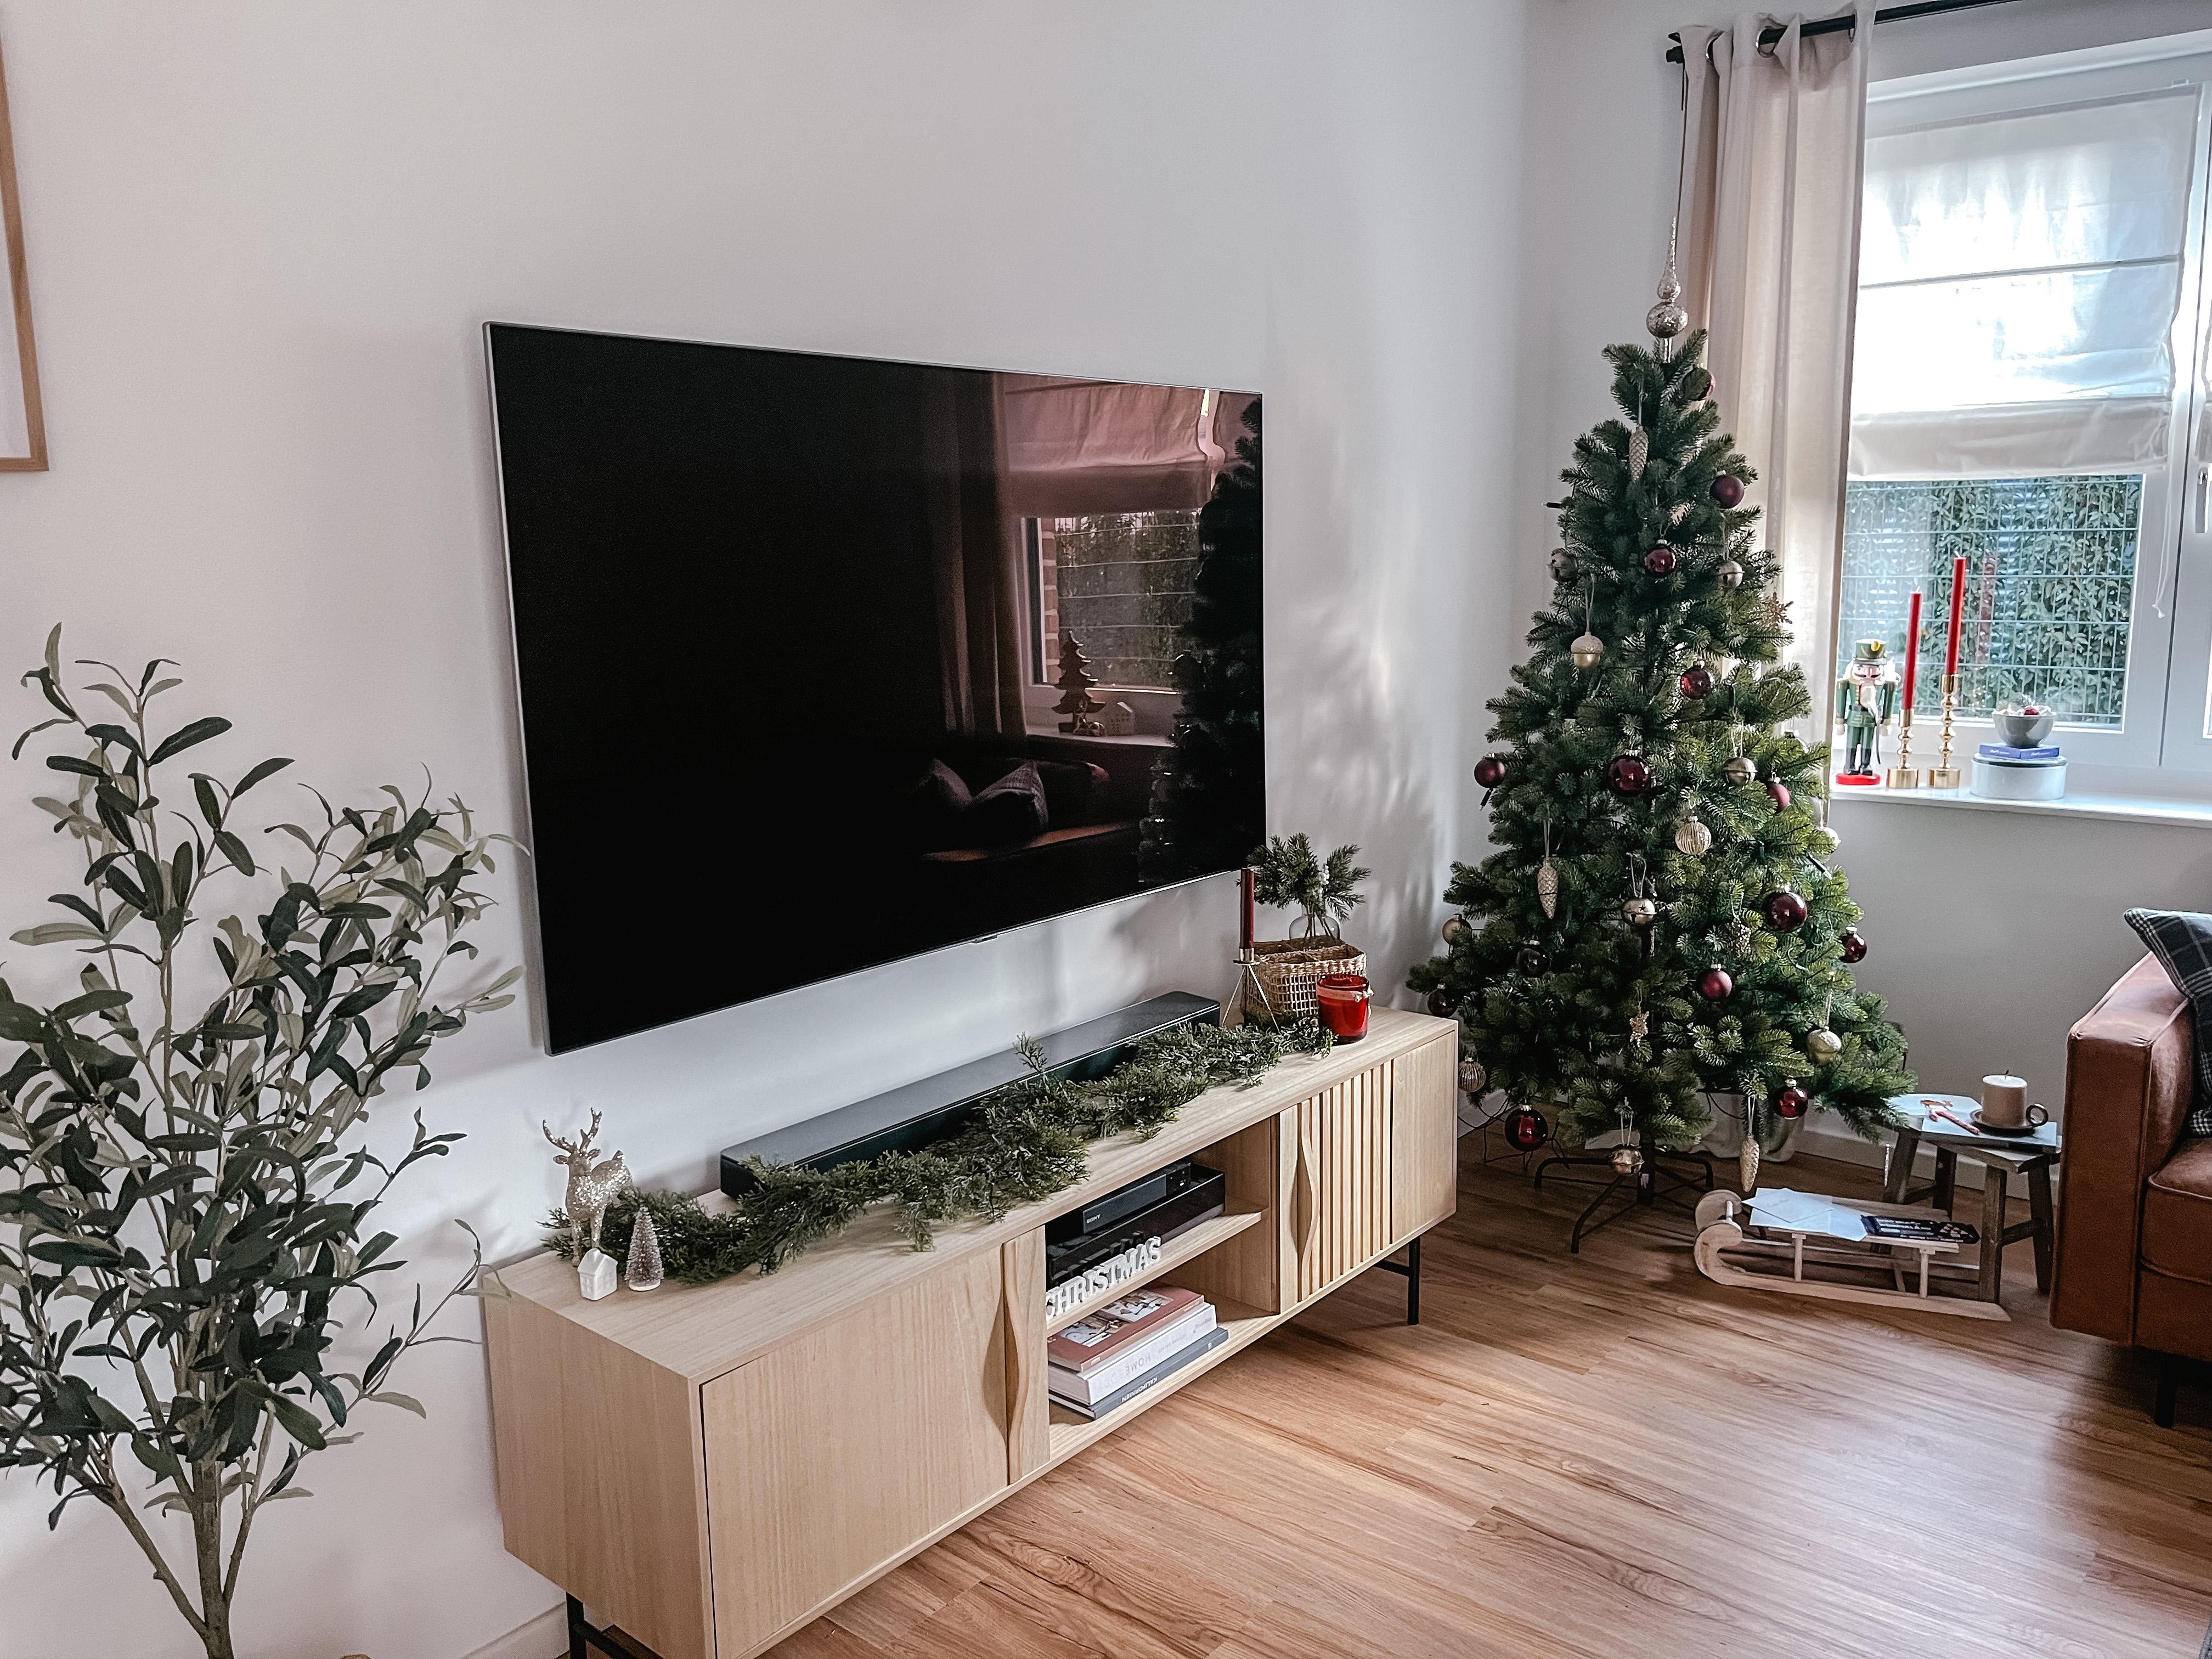 Oh Christmas tree...

#wohnzimmer #Weihnachtsbaum #weihnachtsdeko 